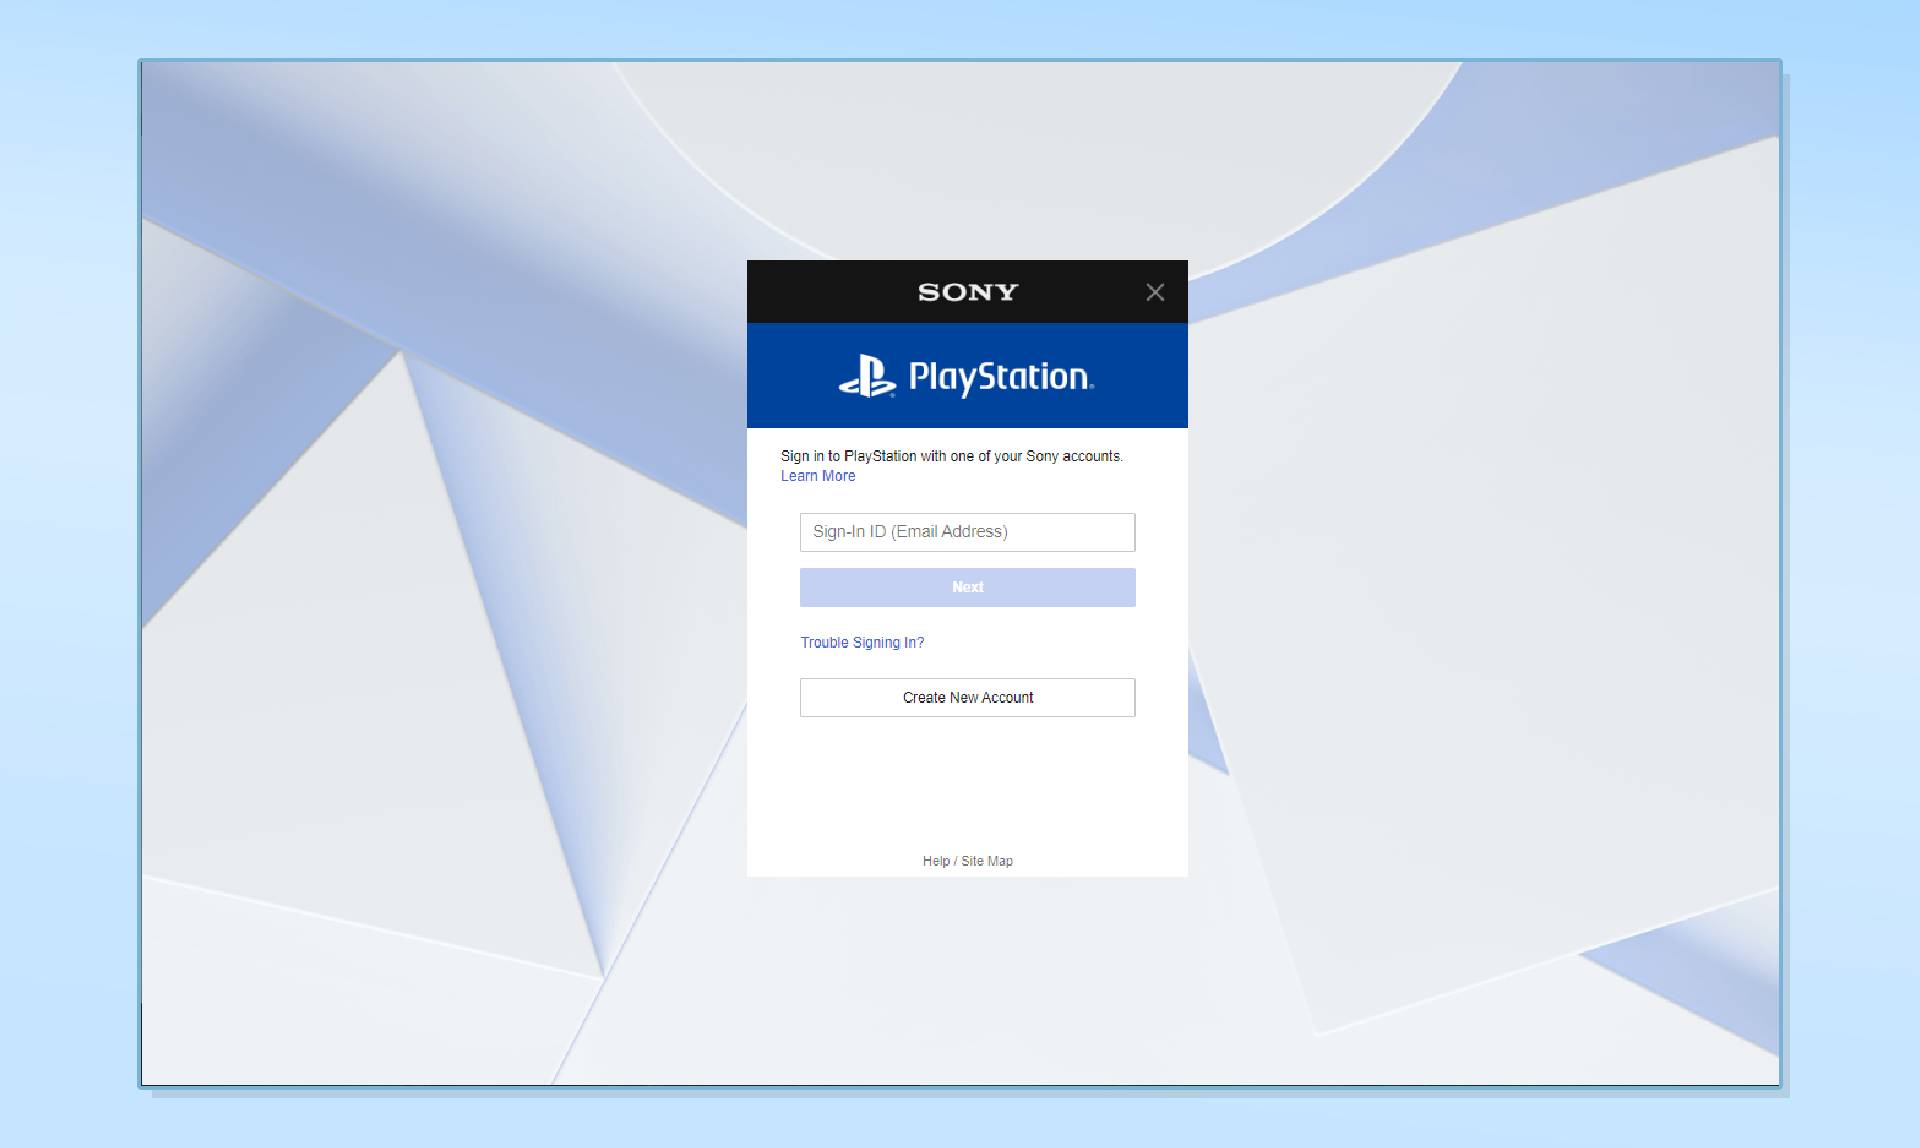 Скриншоты экрана входа в PlayStation, демонстрирующие шаги по изменению вашего имени в PSN